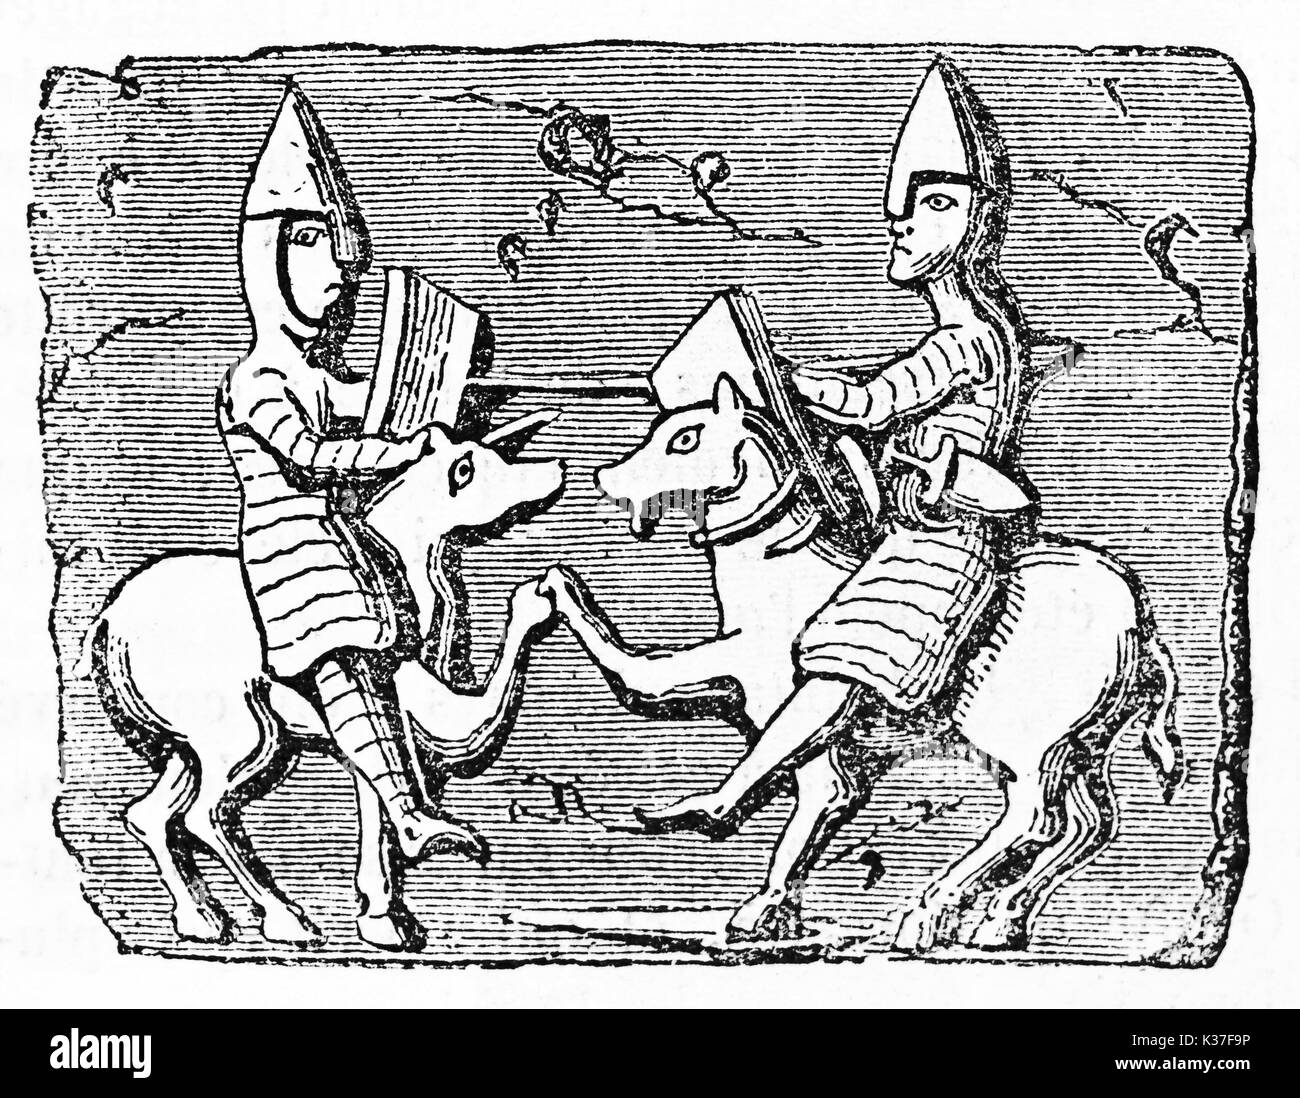 Alte ikonische Bild von zwei Ritter auf ihren Pferden in der Seitenansicht dargestellt, die gegeneinander kämpfen. Alte Illustration von unbekannter Autor auf Magasin Pittoresque Paris 1834 veröffentlicht. Stockfoto